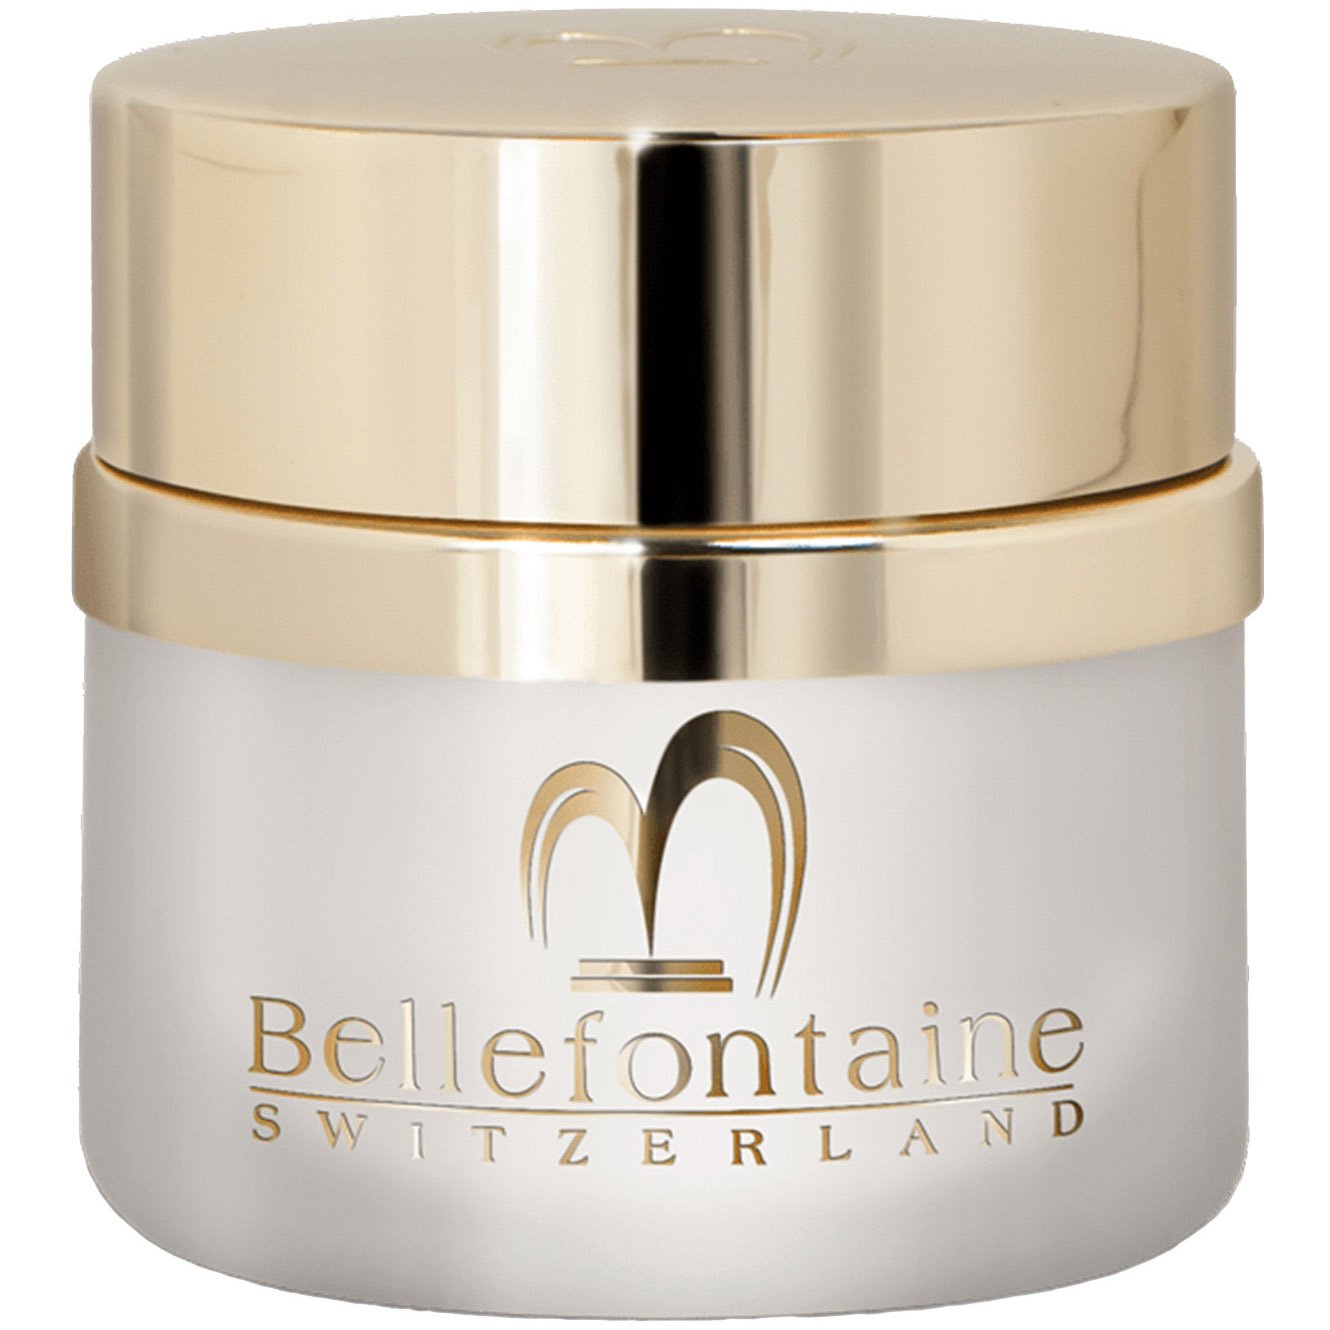 Омолаживающий дневной крем для лица Bellefontaine Nutri-Plus, для сухой кожи, 50 мл - фото 1